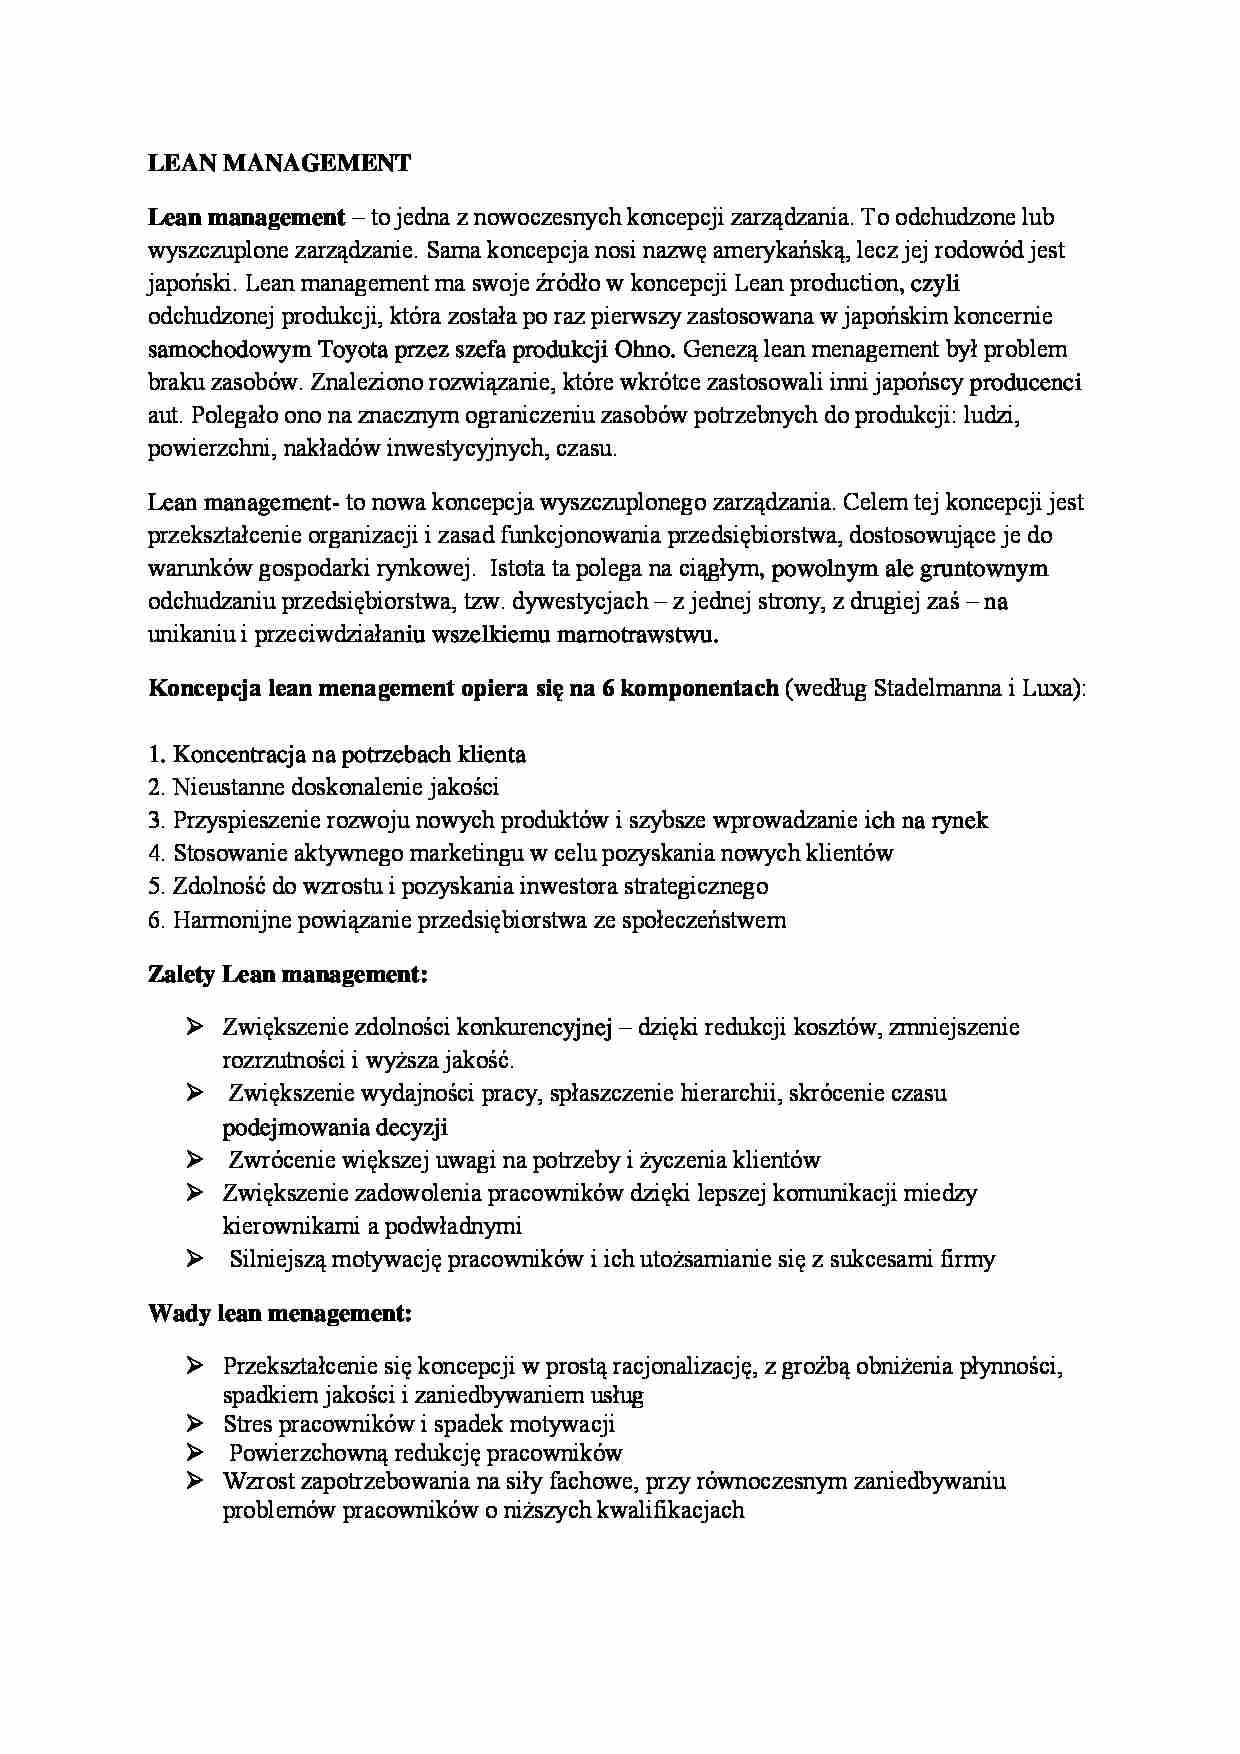 Koncepcje zarządzania - Lean management- wykłady MWSE - strona 1